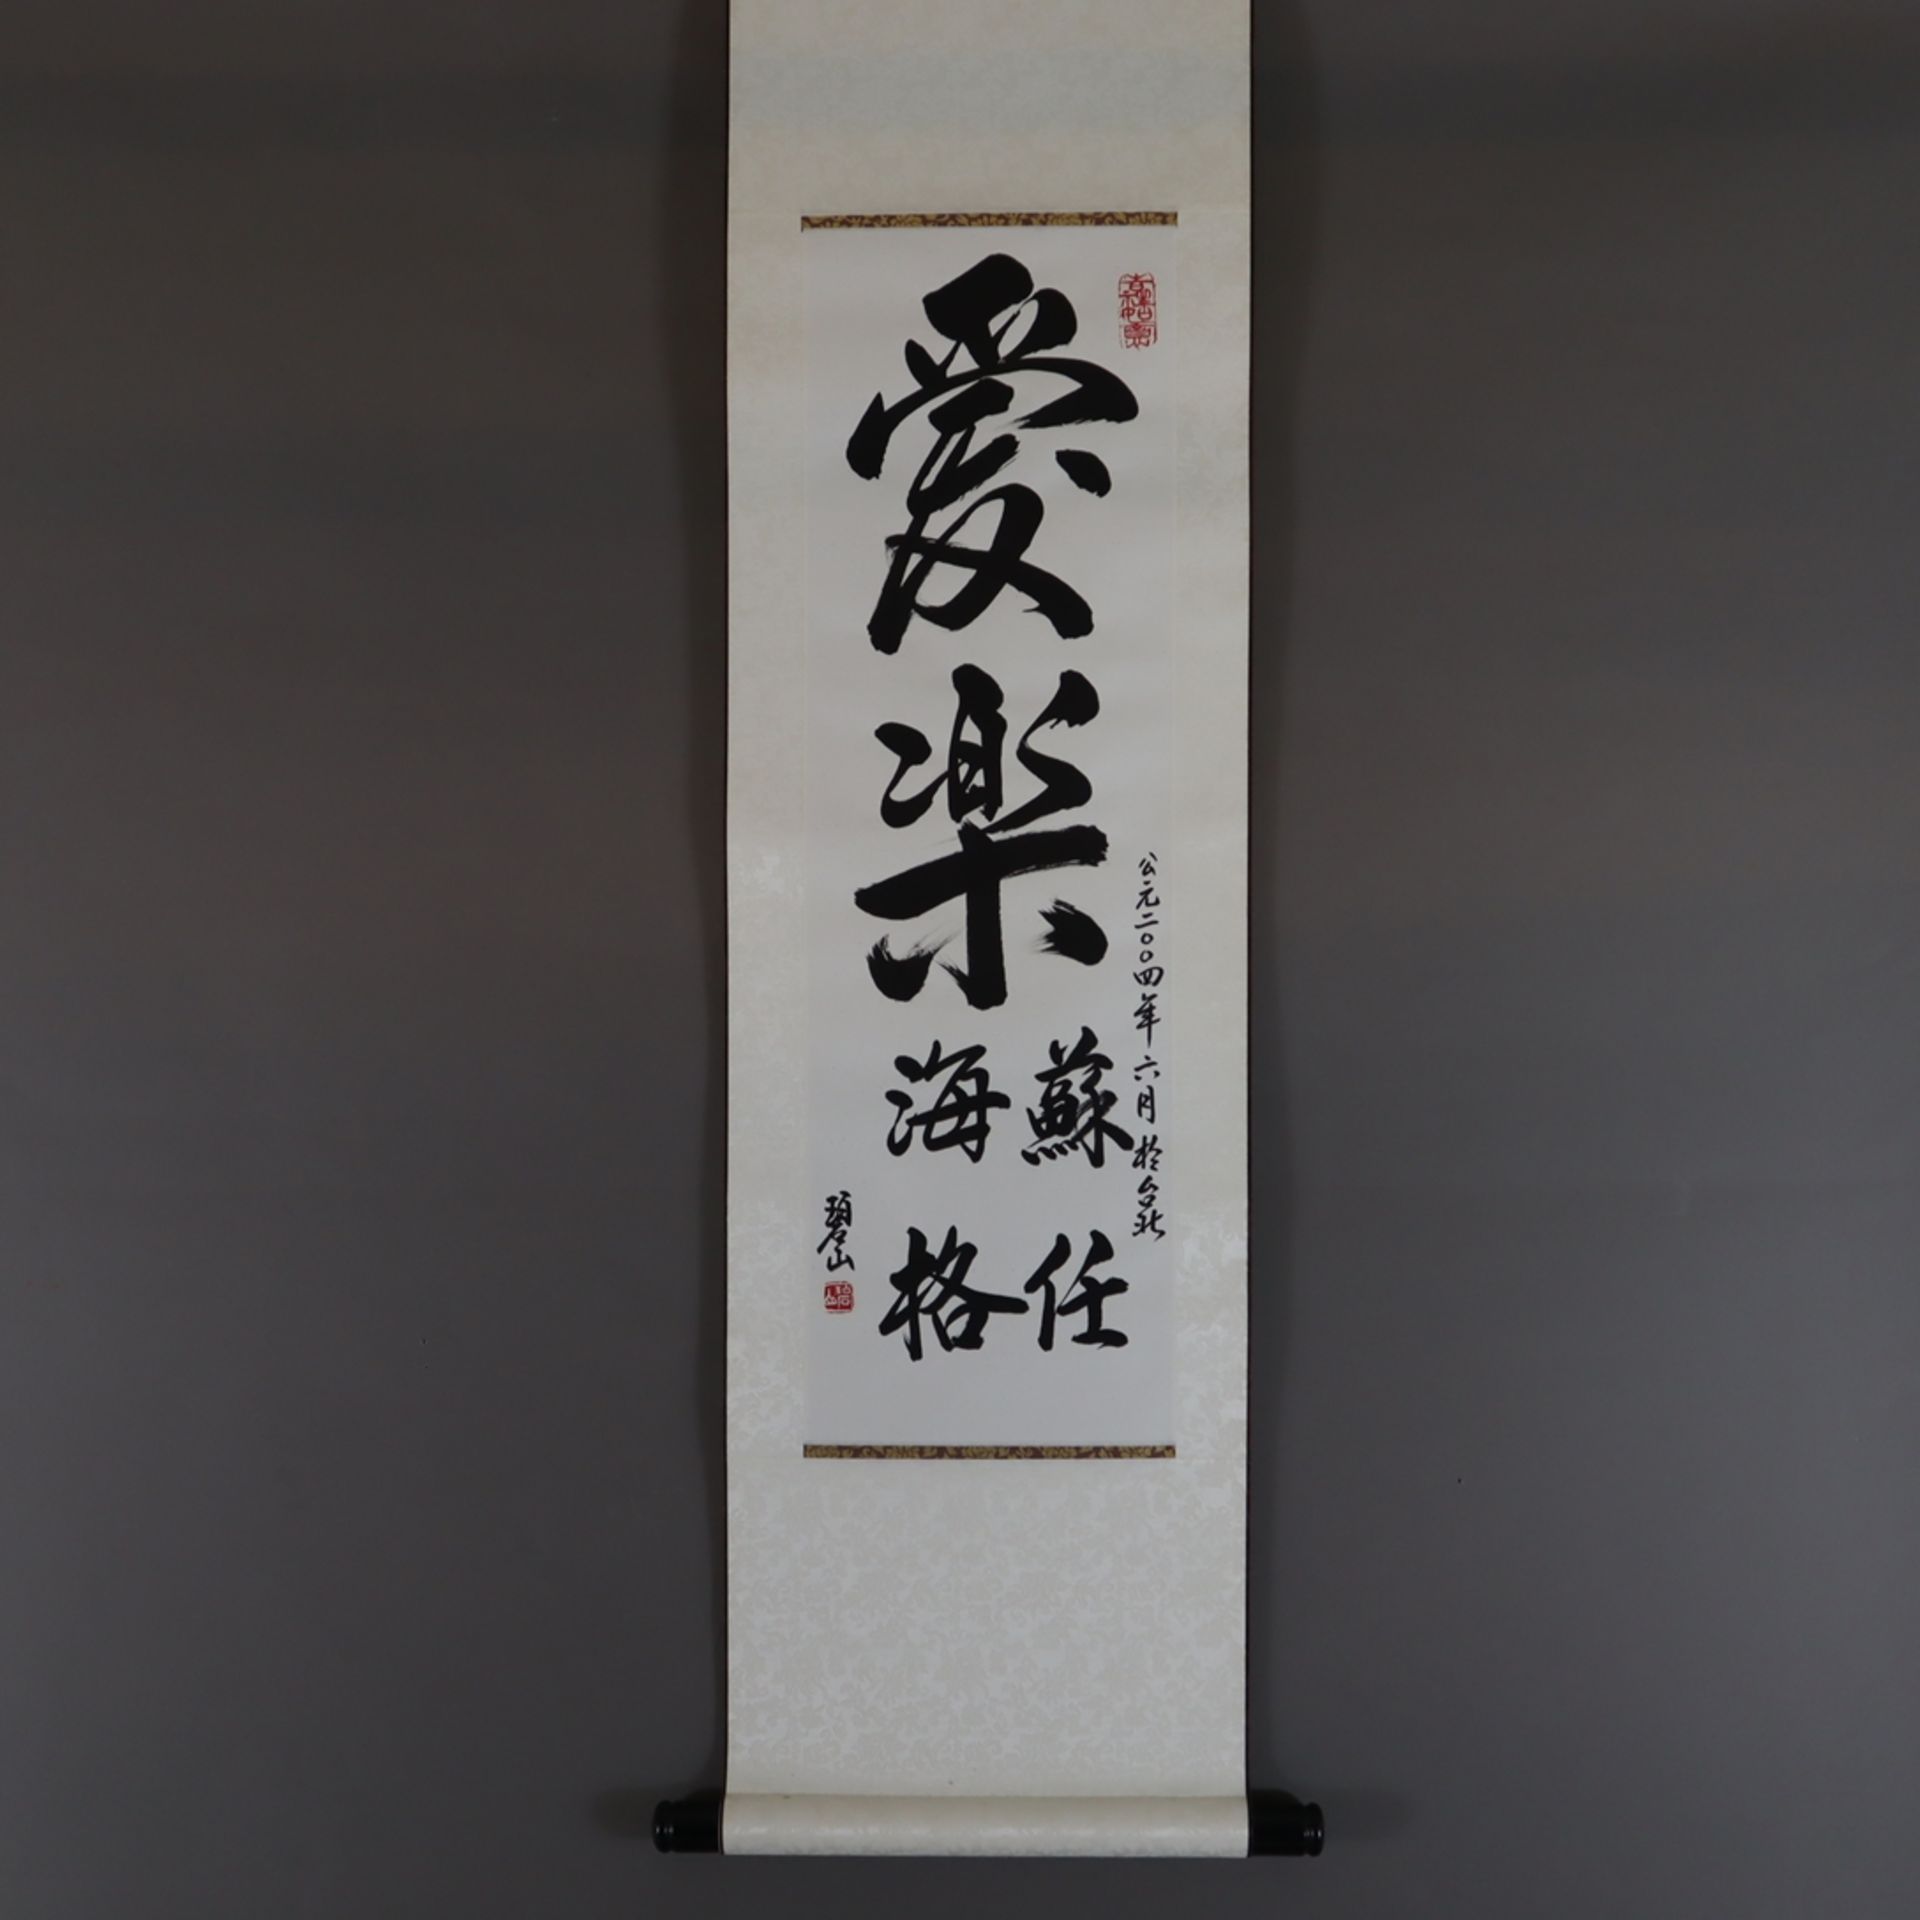 Chinesisches Rollbild - Kalligraphie, Tusche auf Papier, 2 Siegel, ca. 69,5 x 20,5 cm, als Rollbild - Bild 7 aus 7